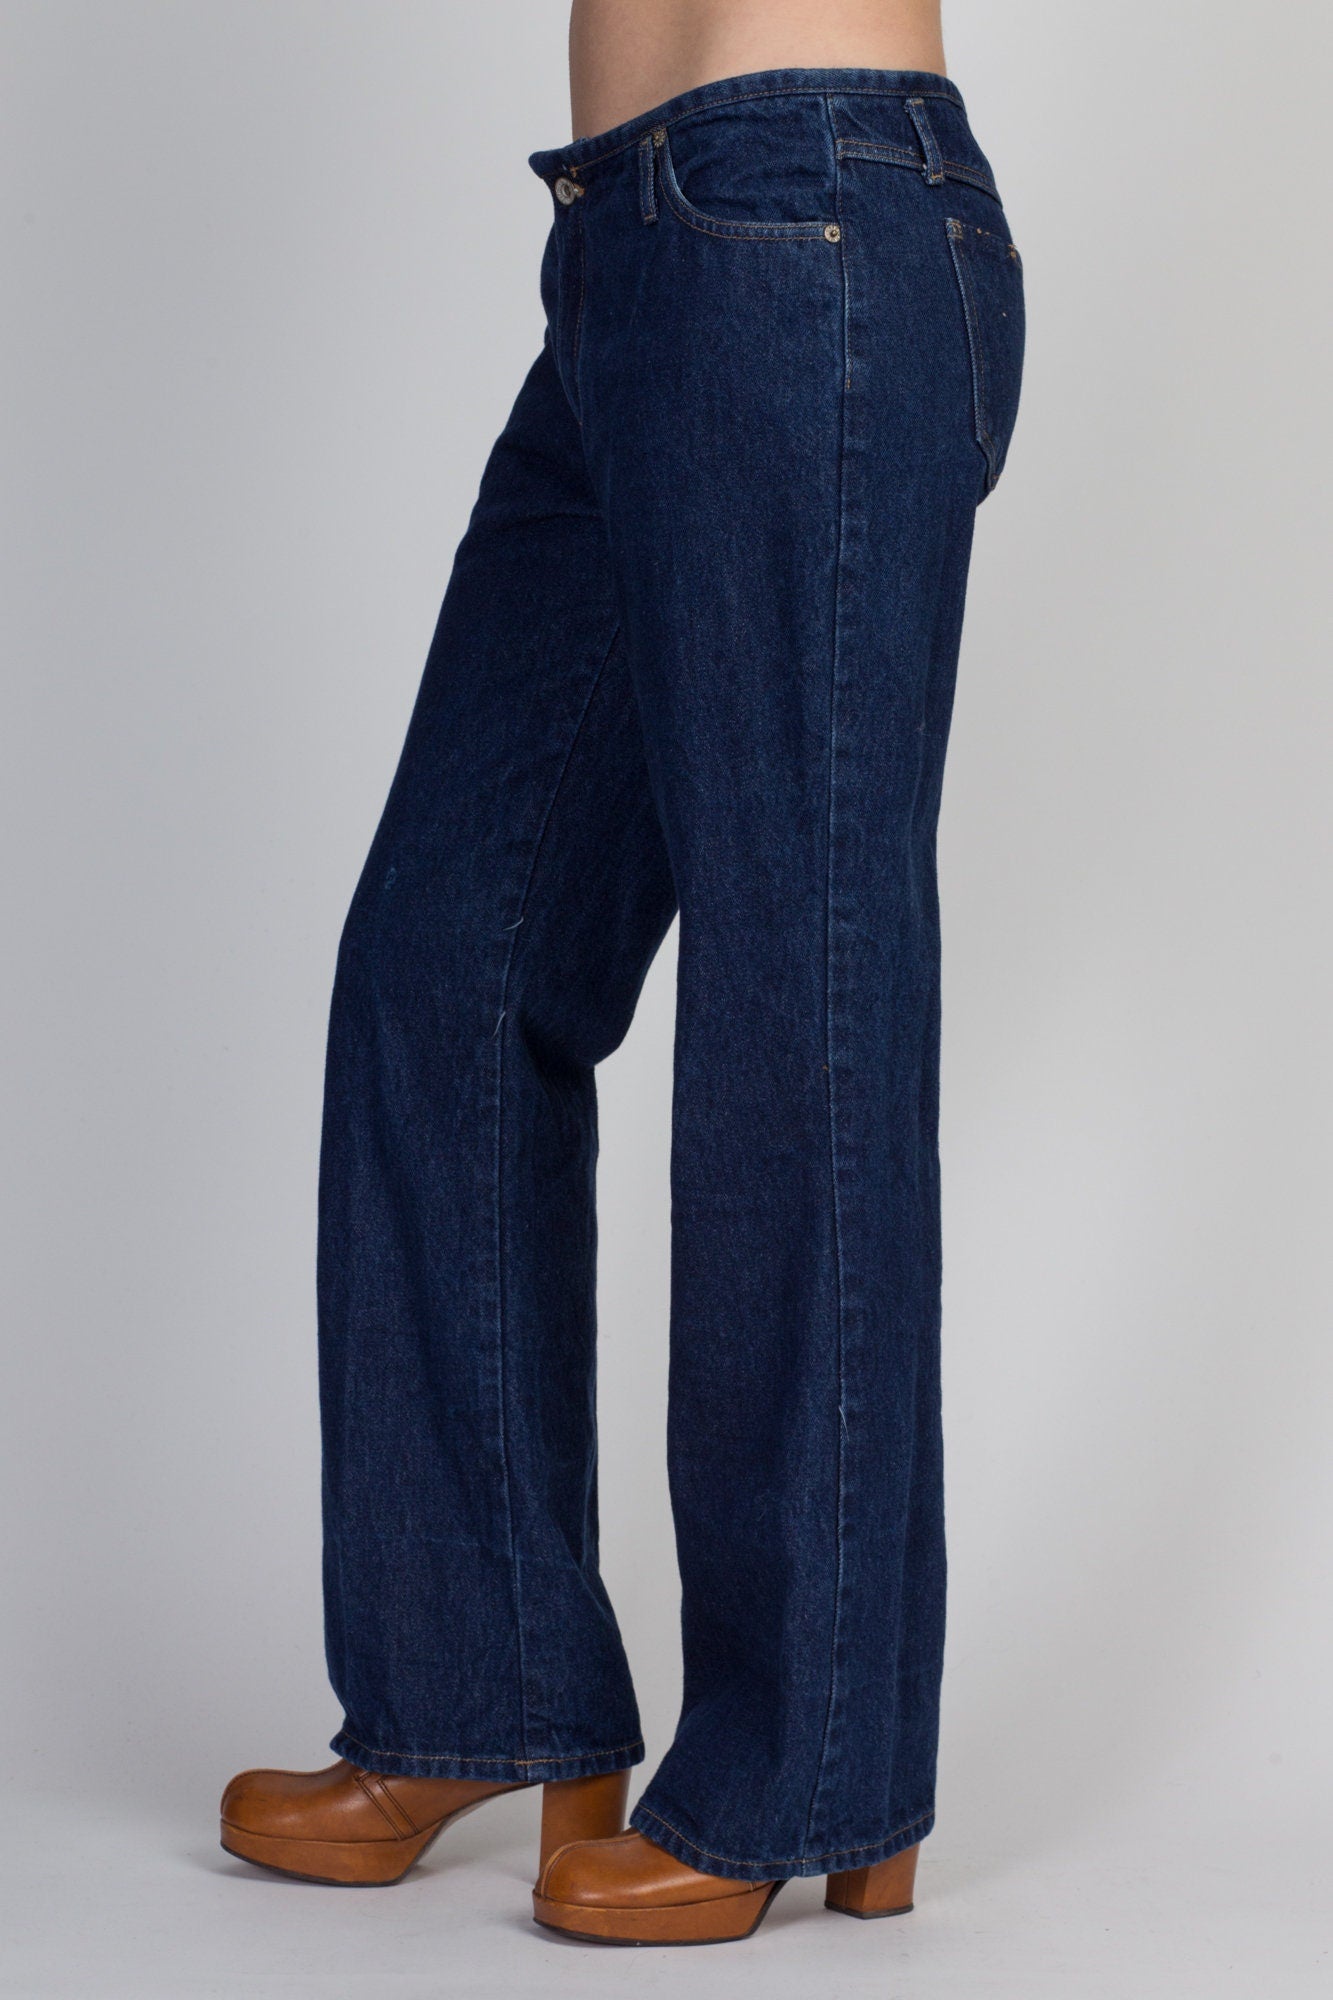 90s Y2K Dark Wash Denim Bootcut Jeans - Medium 